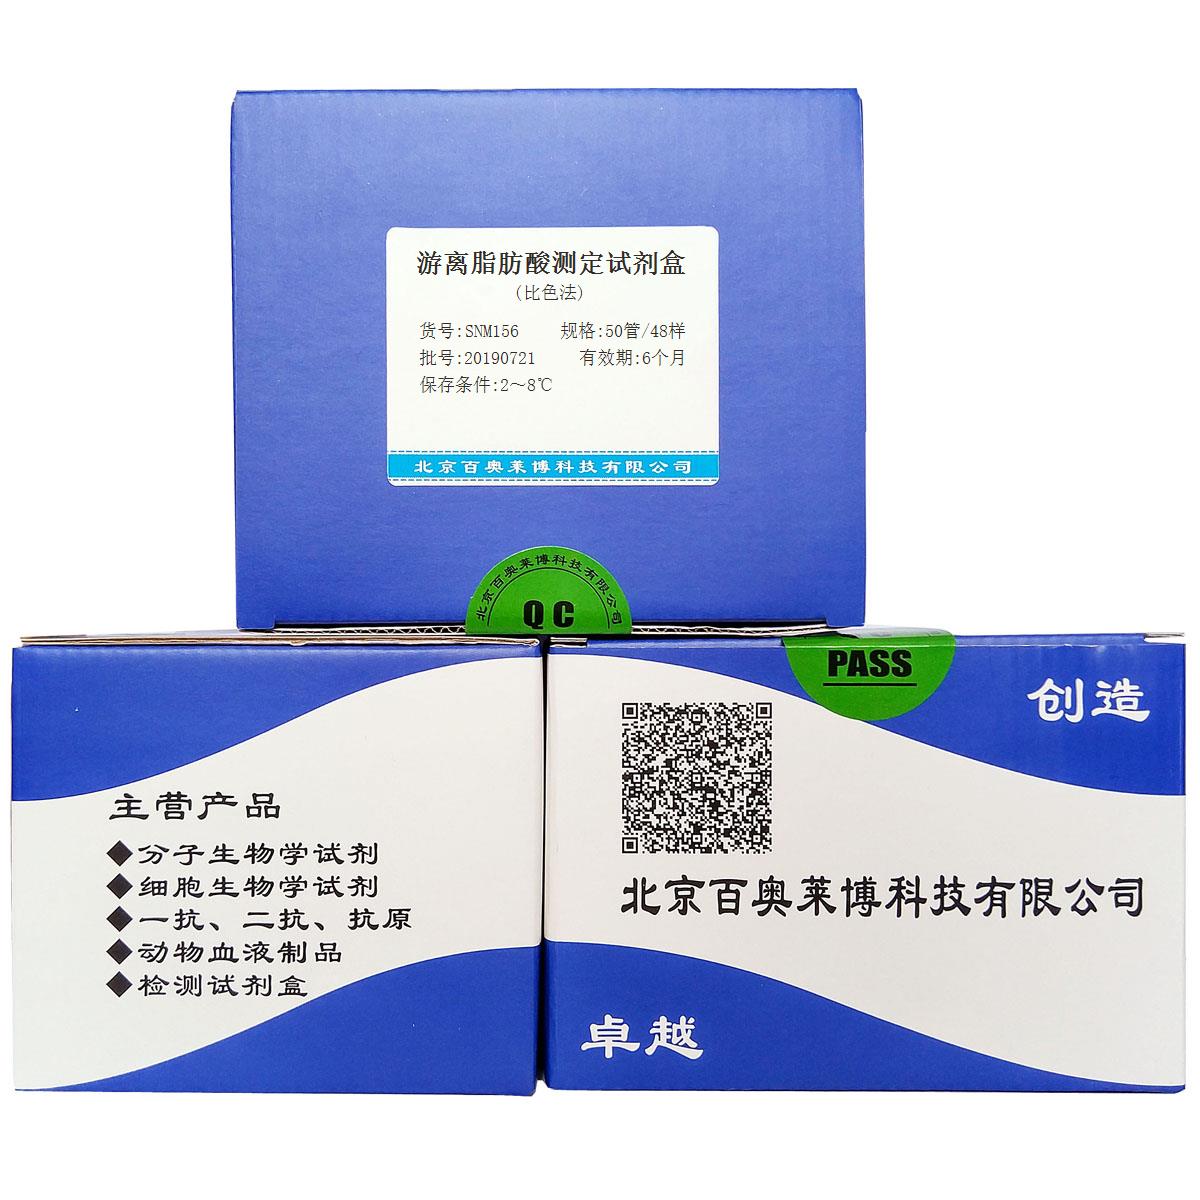 游离脂肪酸测定试剂盒(比色法)北京供应商